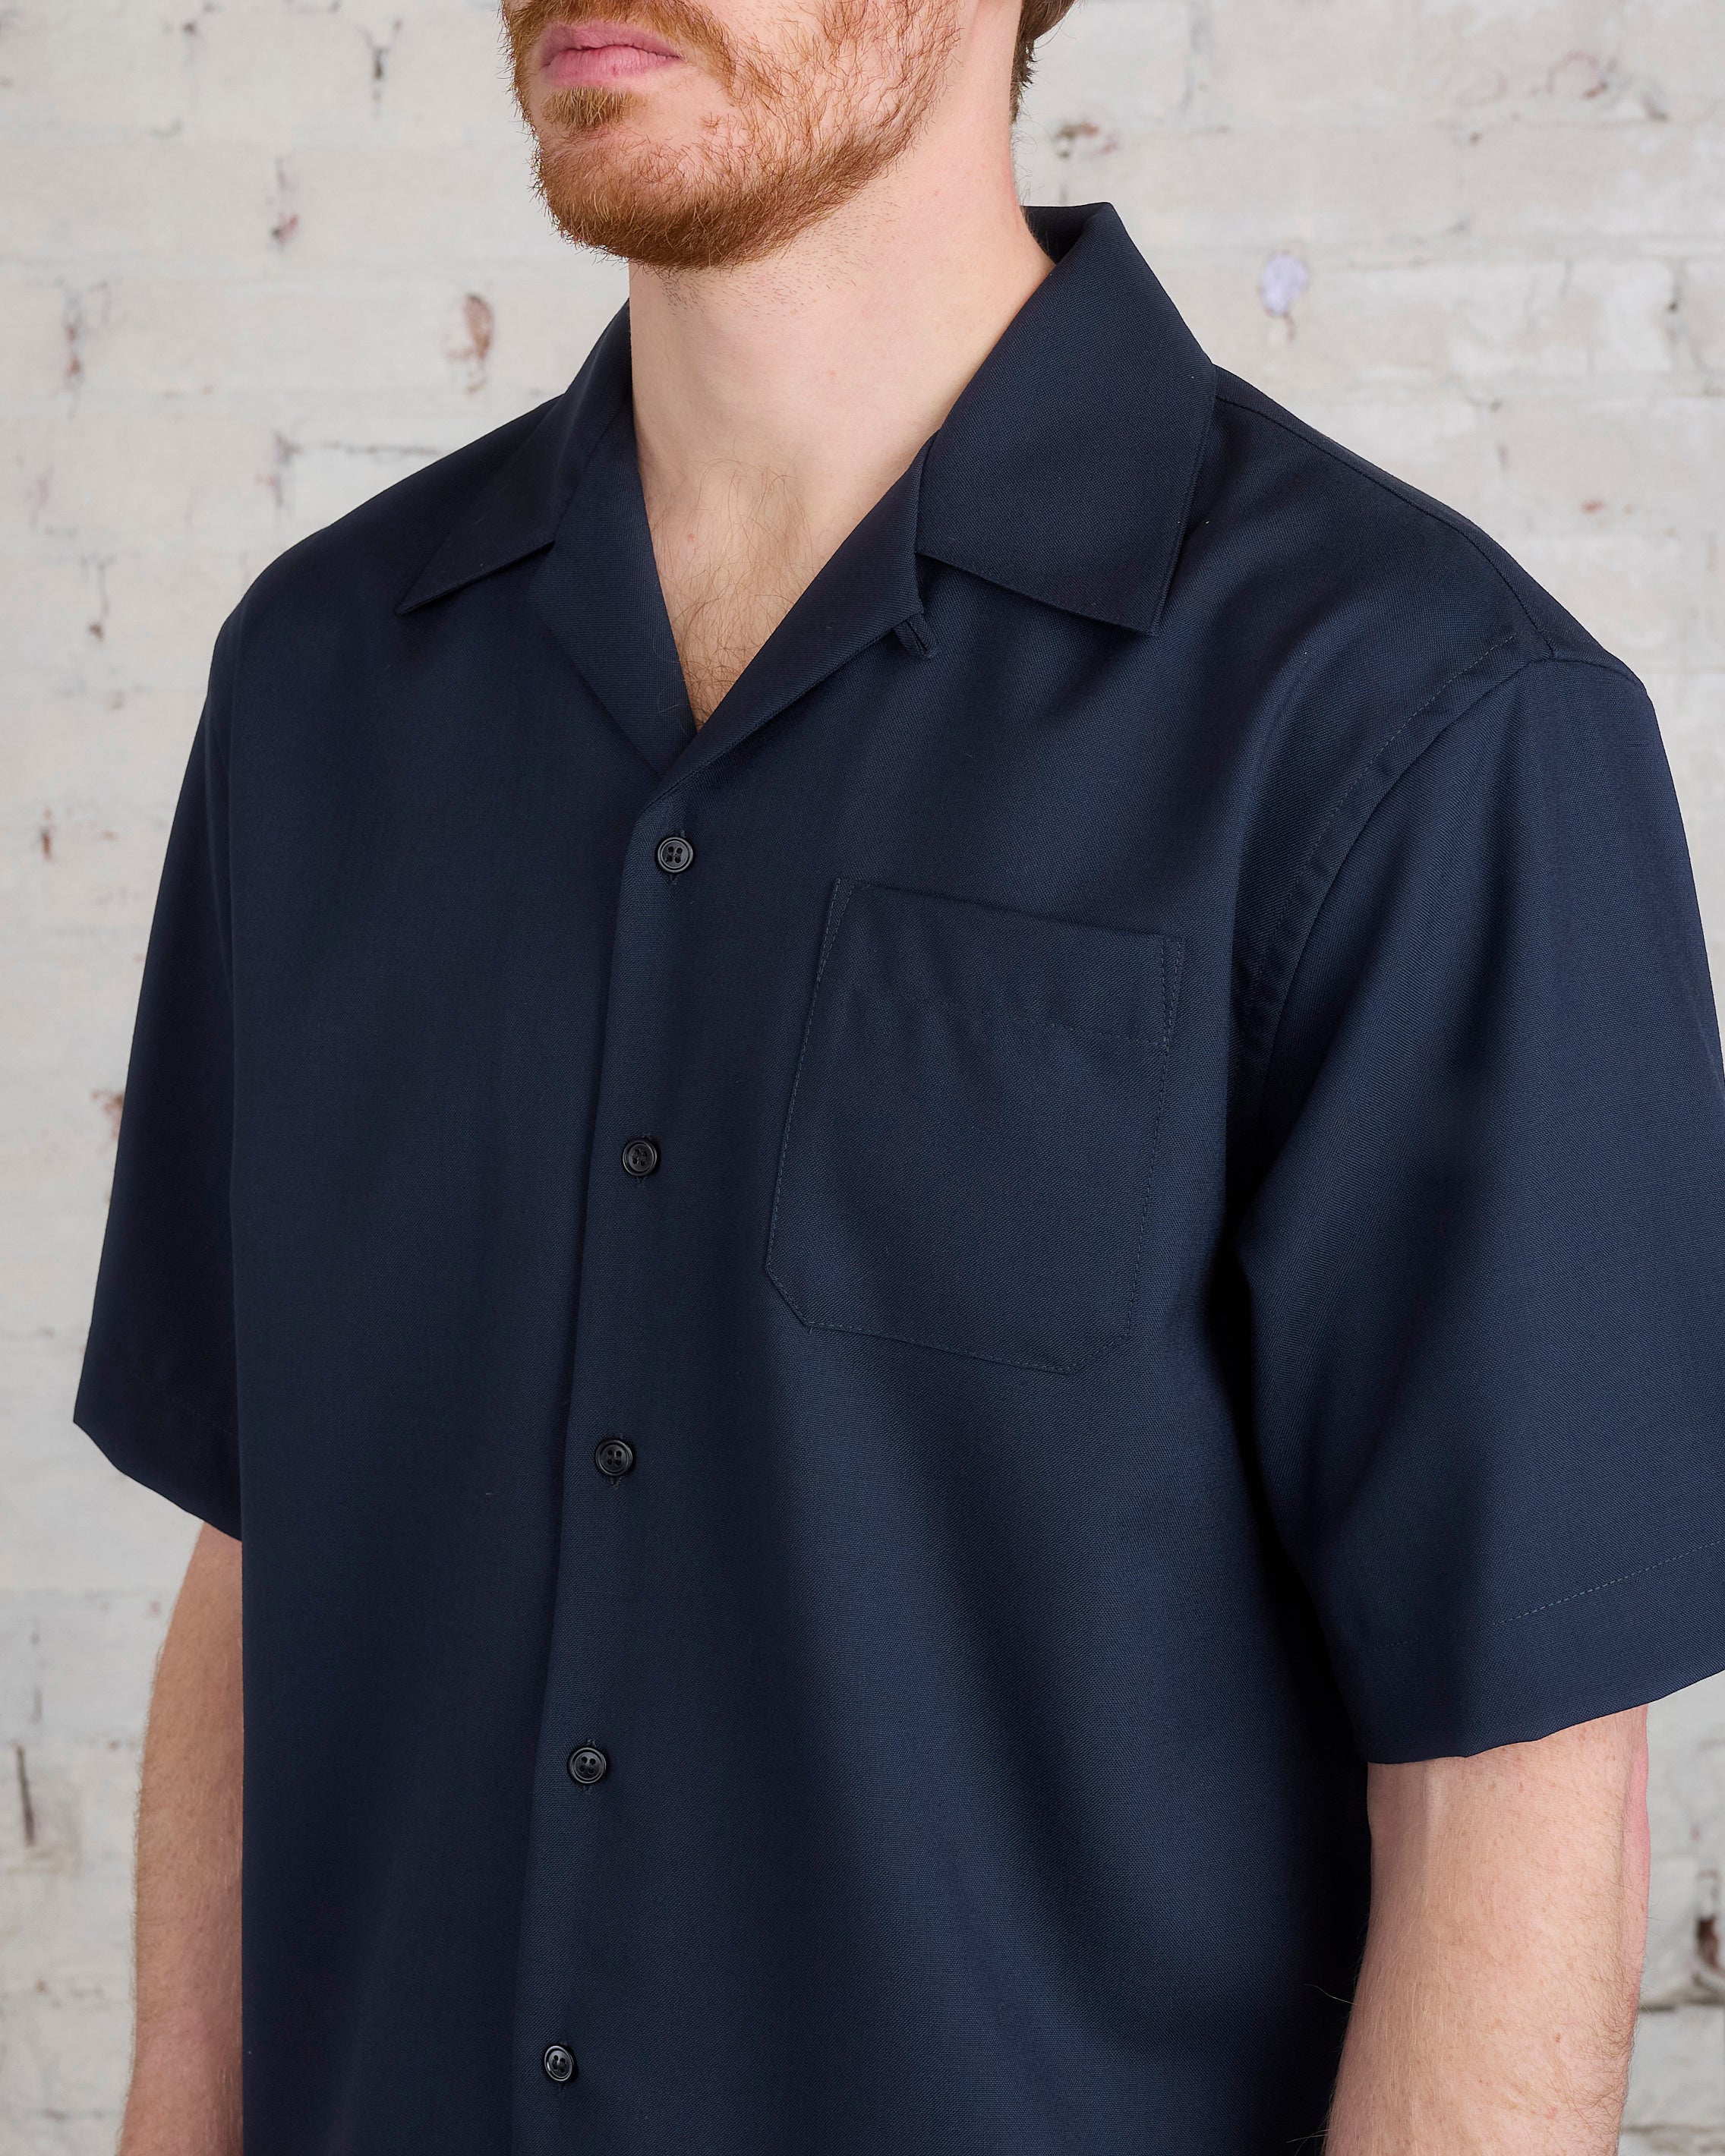 日本直販MARNI bowling shirts (black，blue) 44 トップス